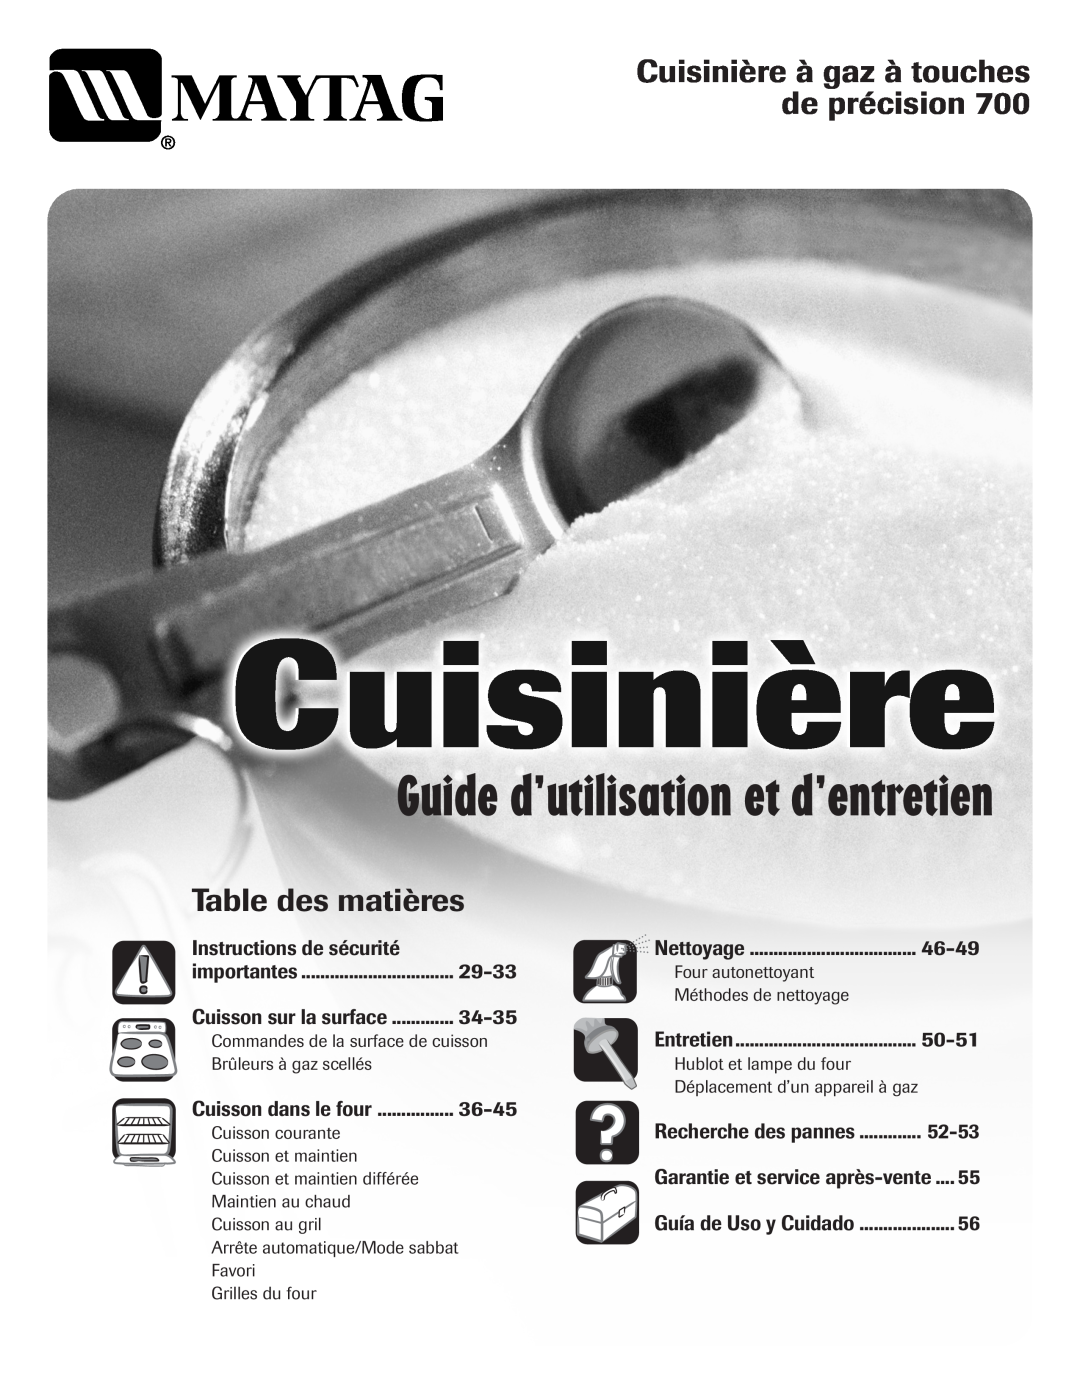 Maytag 700 Guide d’utilisation et d’entretien, Cuisinière à gaz à touches de précision, Table des matières, 46-49, 29-33 